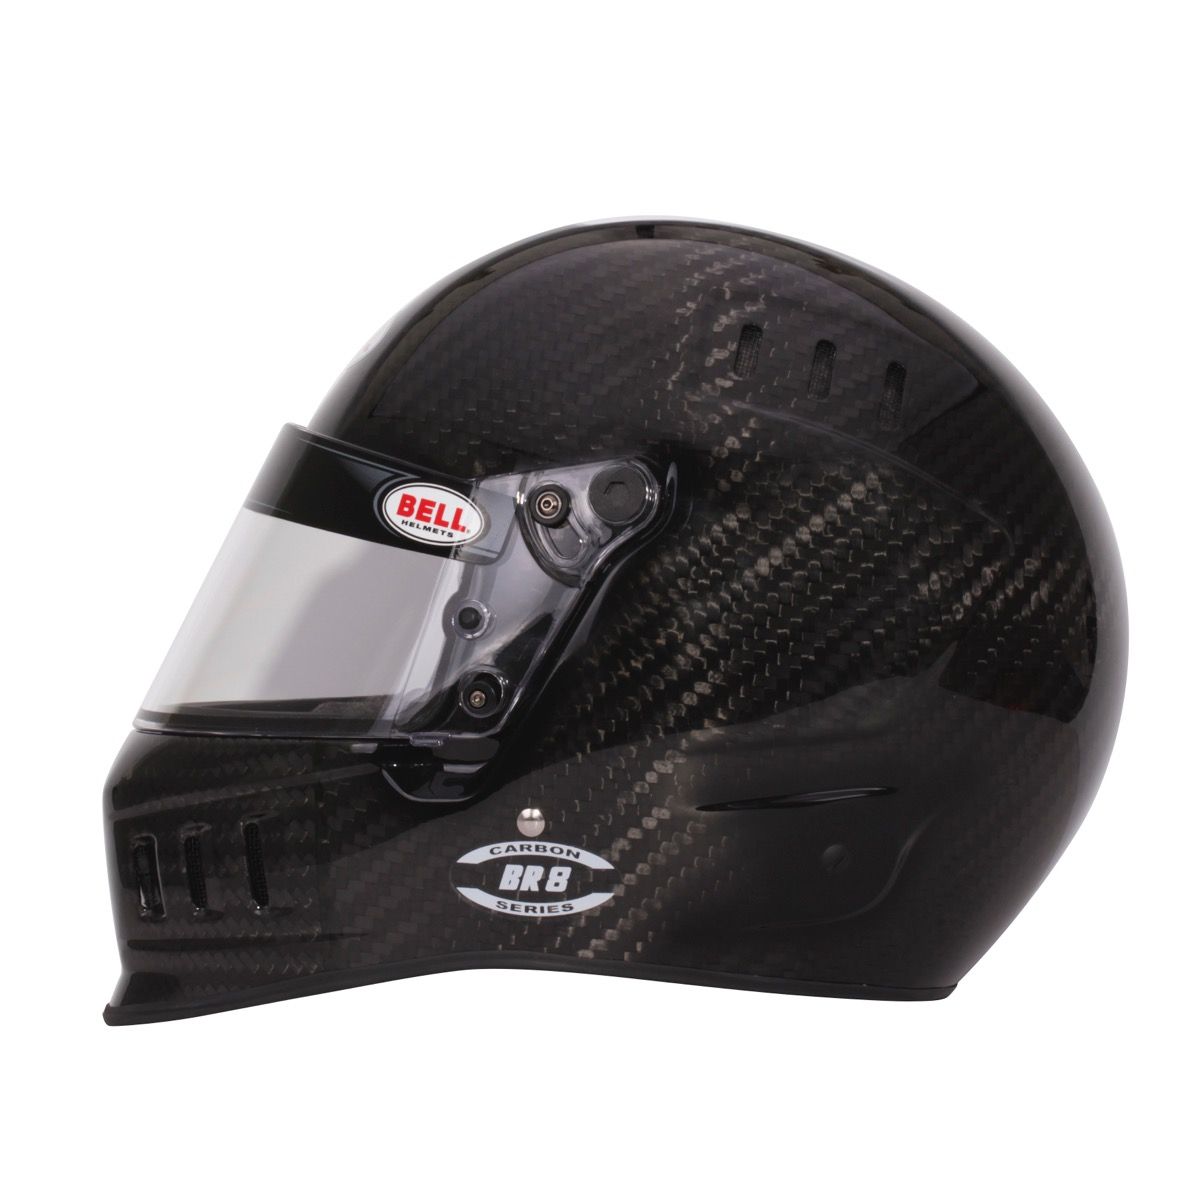 Bell BR8 Carbon Fiber Helmet Left Side Image